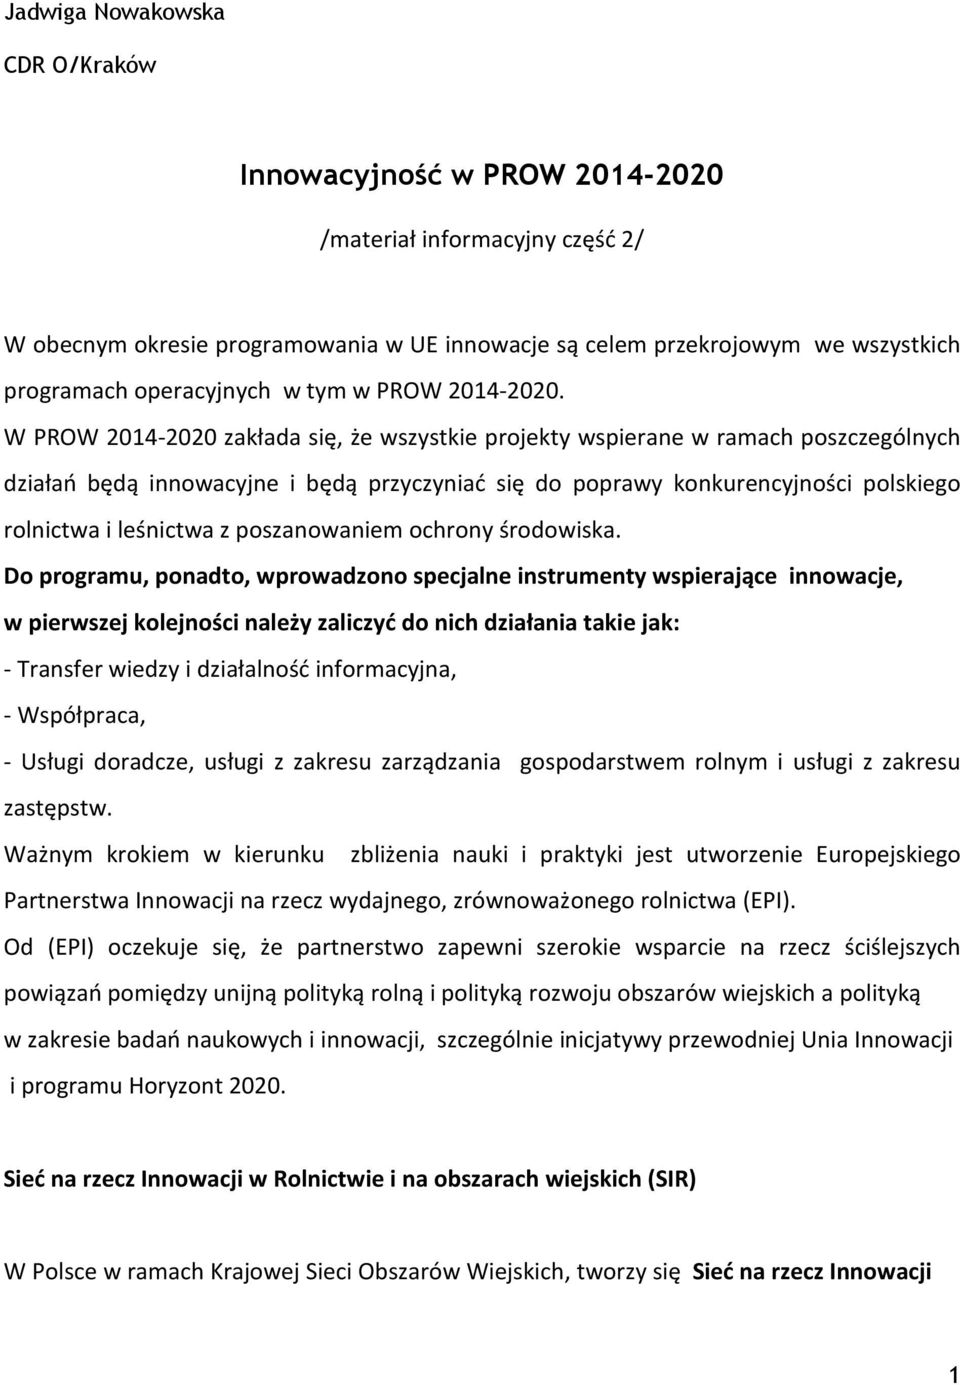 W PROW 2014-2020 zakłada się, że wszystkie projekty wspierane w ramach poszczególnych działań będą innowacyjne i będą przyczyniać się do poprawy konkurencyjności polskiego rolnictwa i leśnictwa z